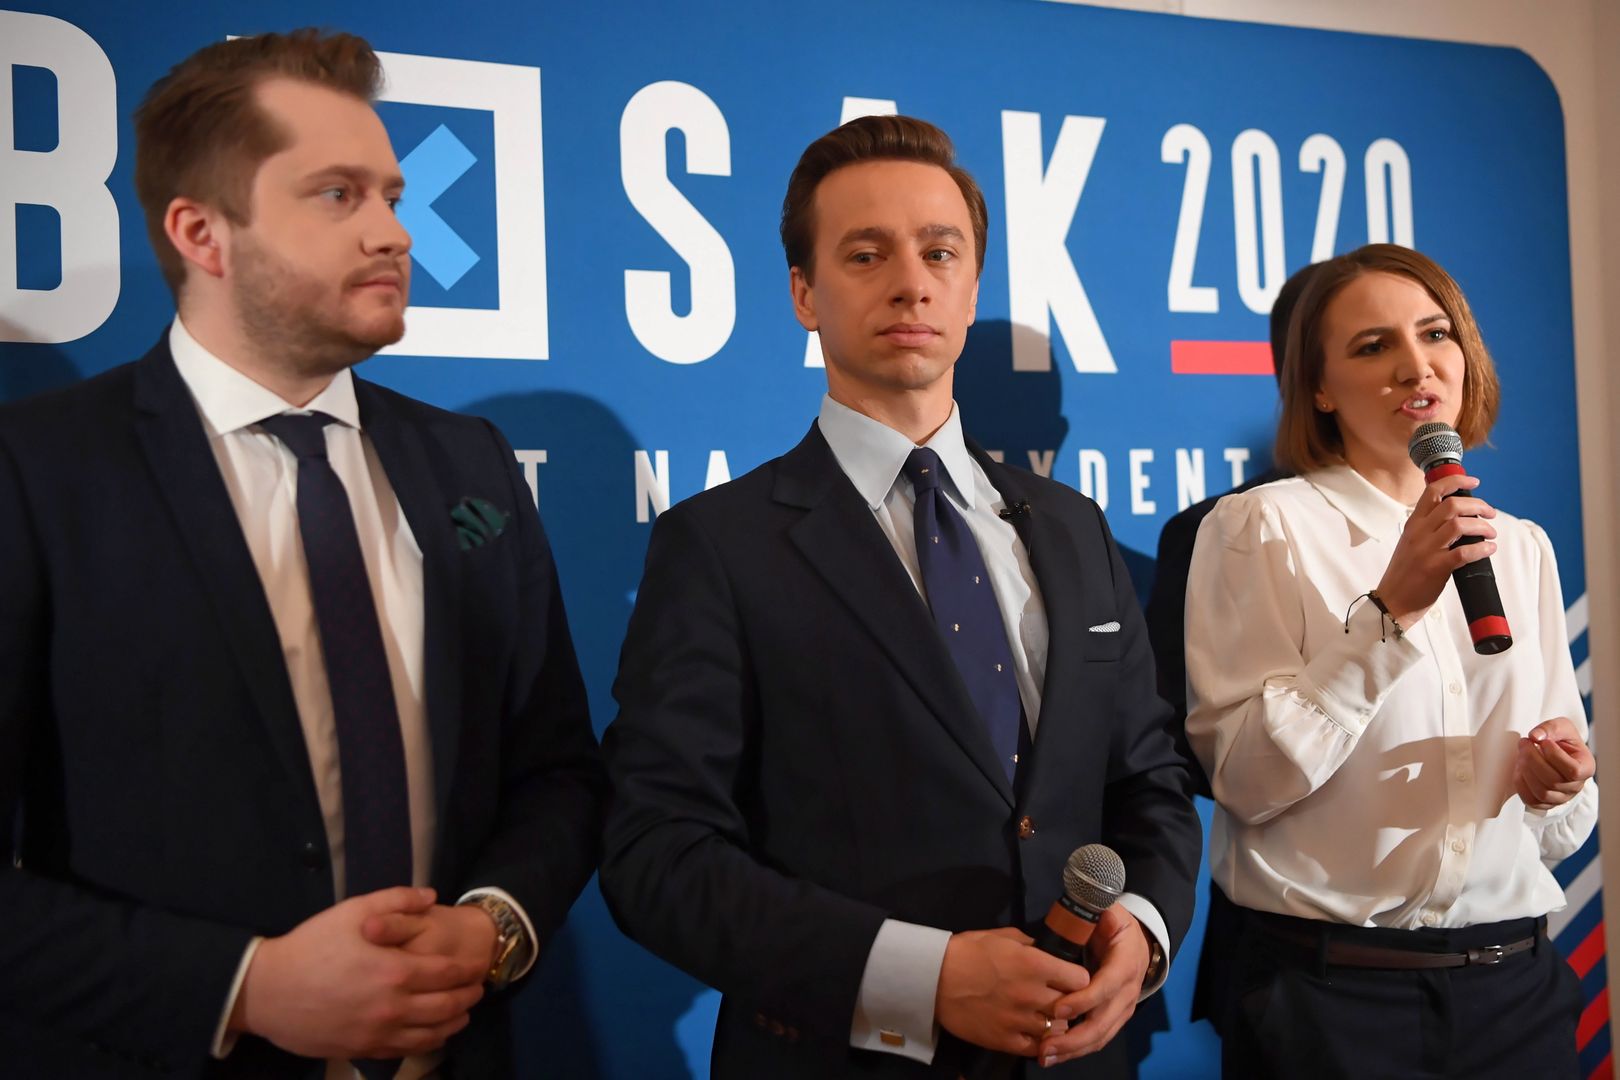 Koronawirus. Krzysztof Bosak proponuje przełożenie wyborów prezydenckich